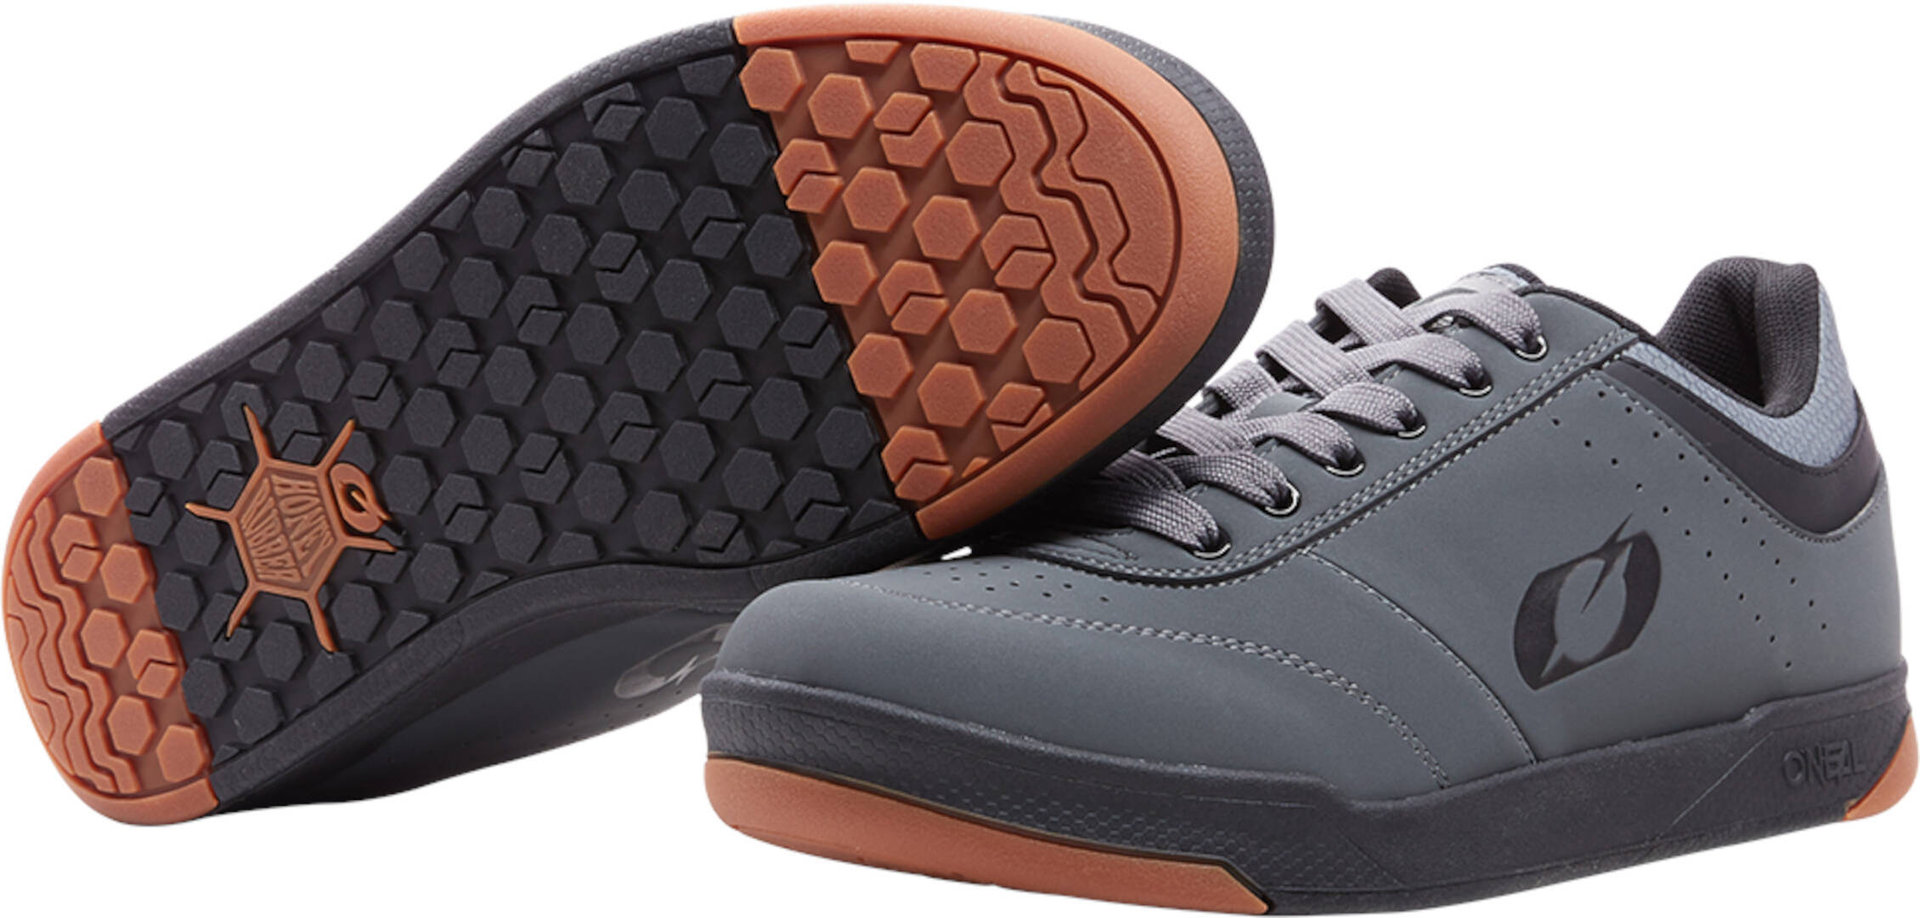 Oneal Pumps Flat V.22 scarpe, nero-grigio, dimensione 36